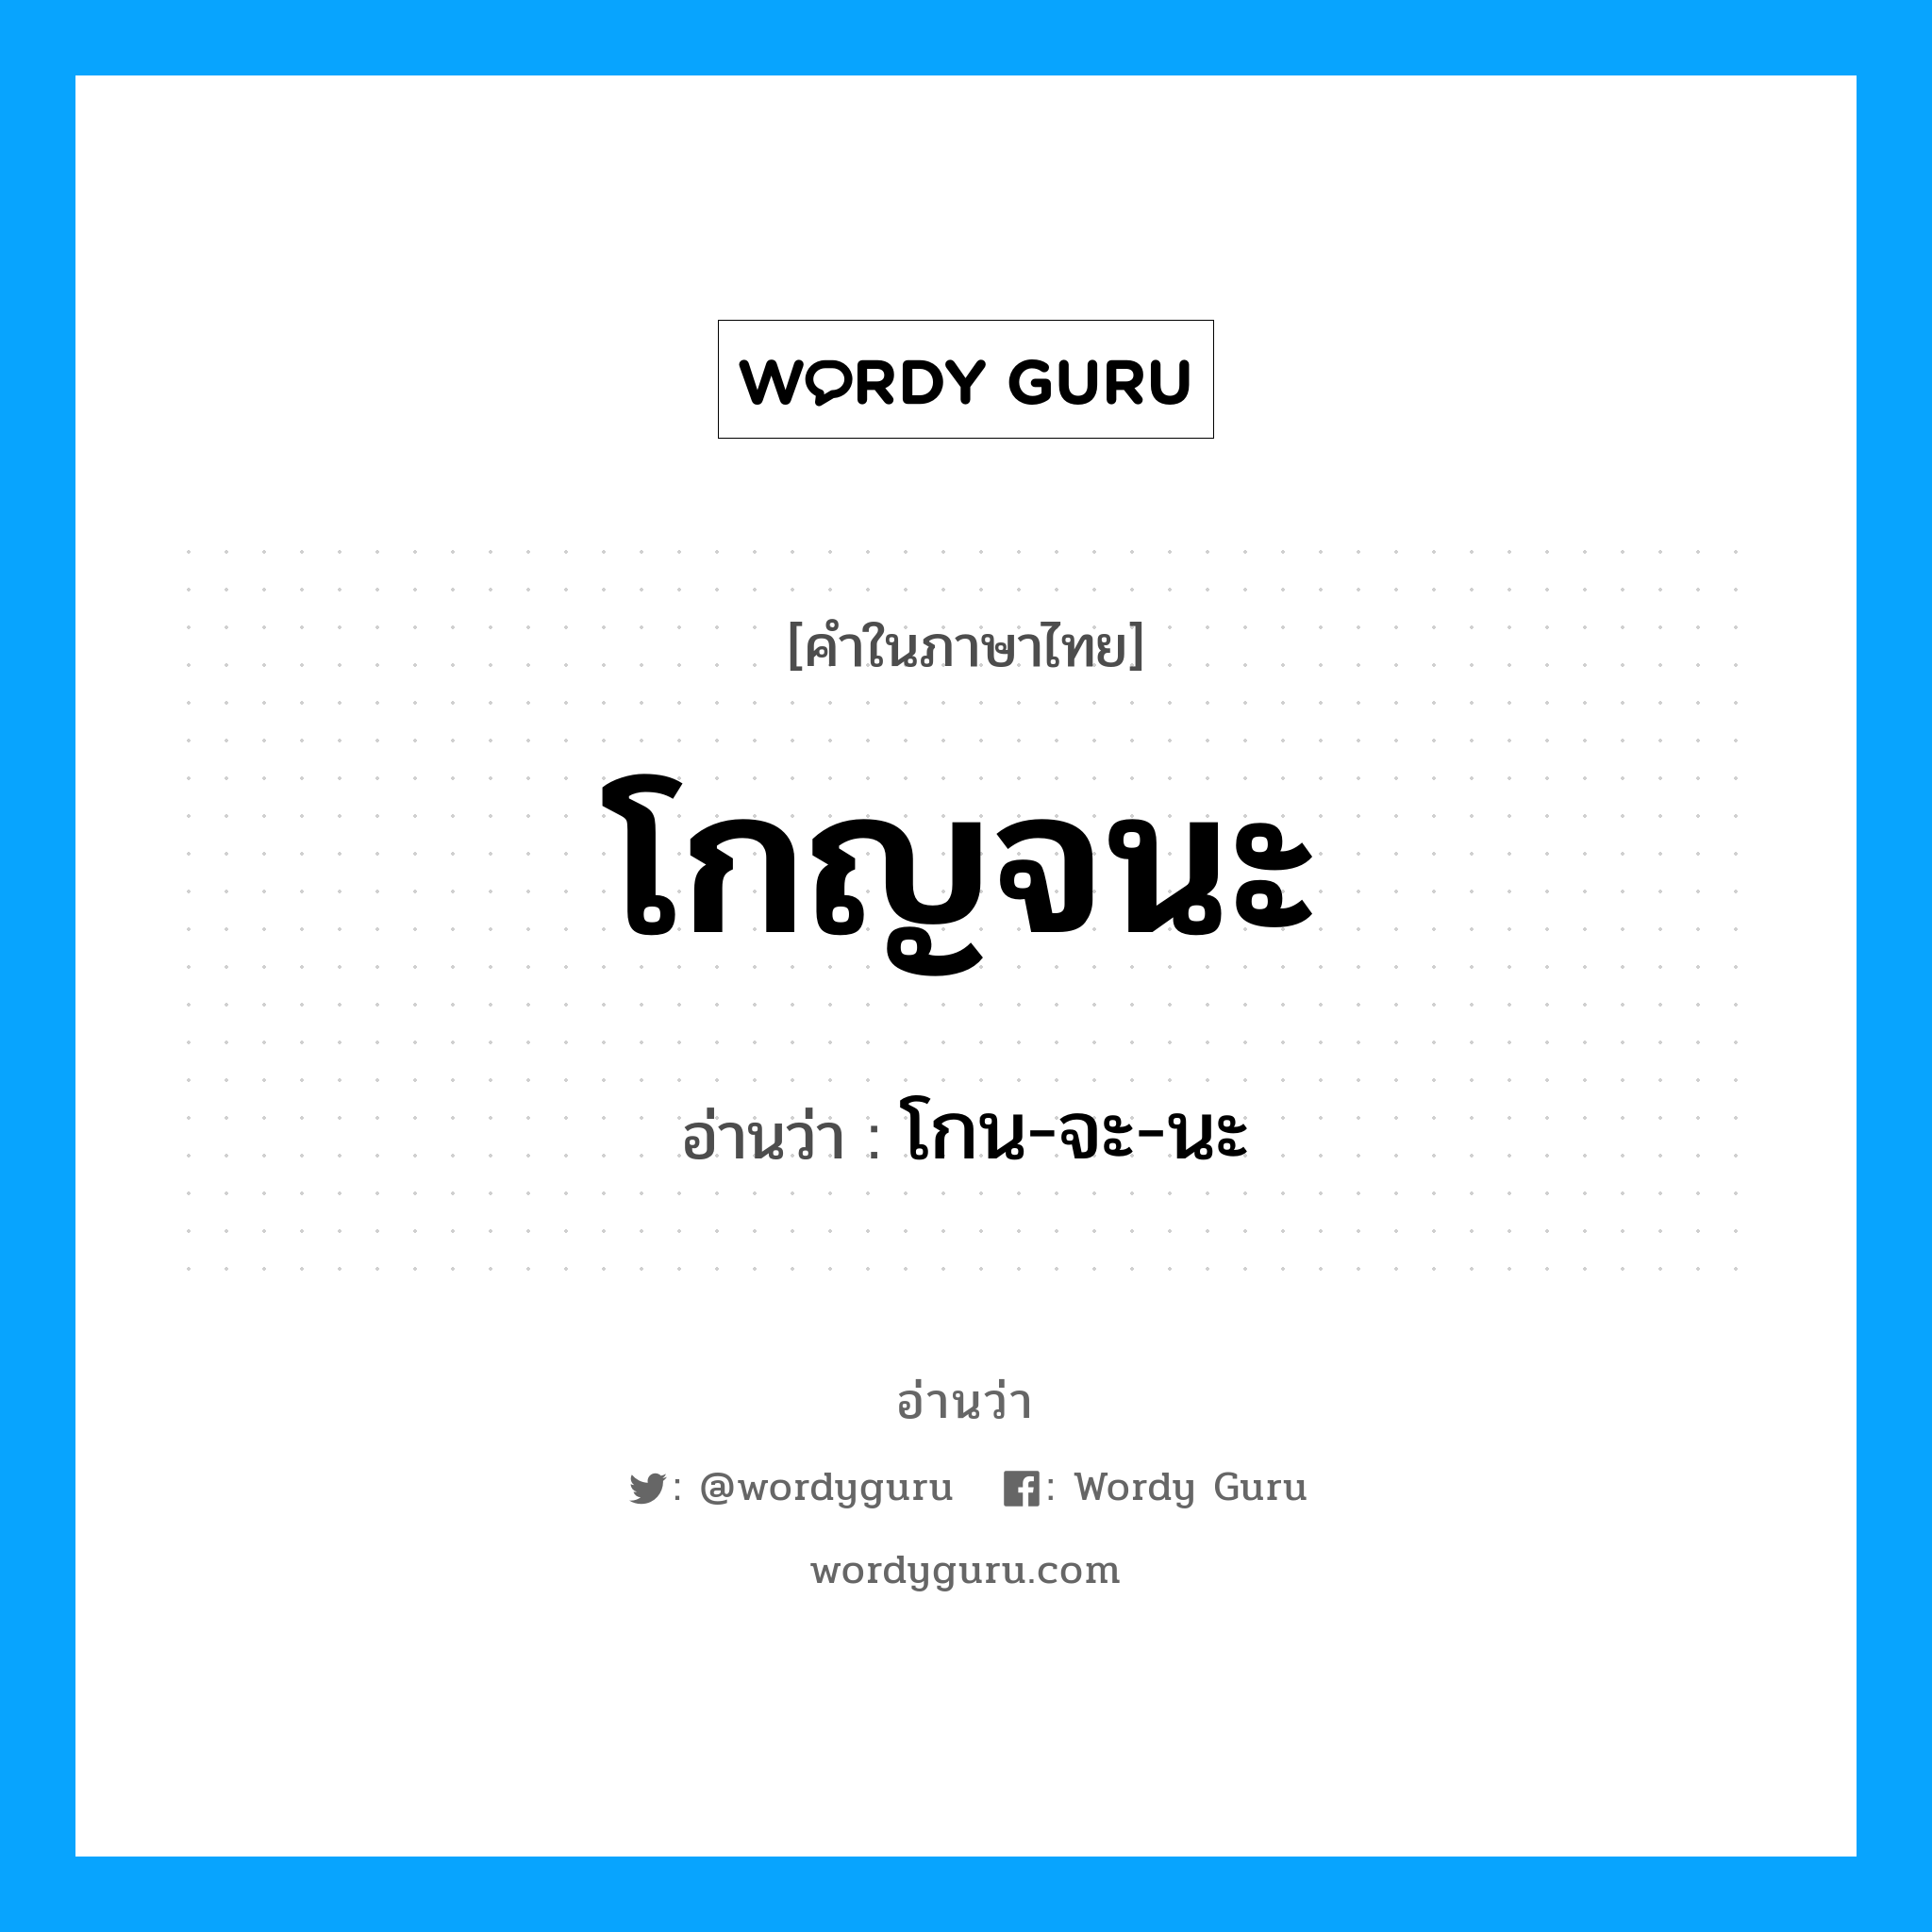 โกน-จะ-นะ เป็นคำอ่านของคำไหน?, คำในภาษาไทย โกน-จะ-นะ อ่านว่า โกญจนะ